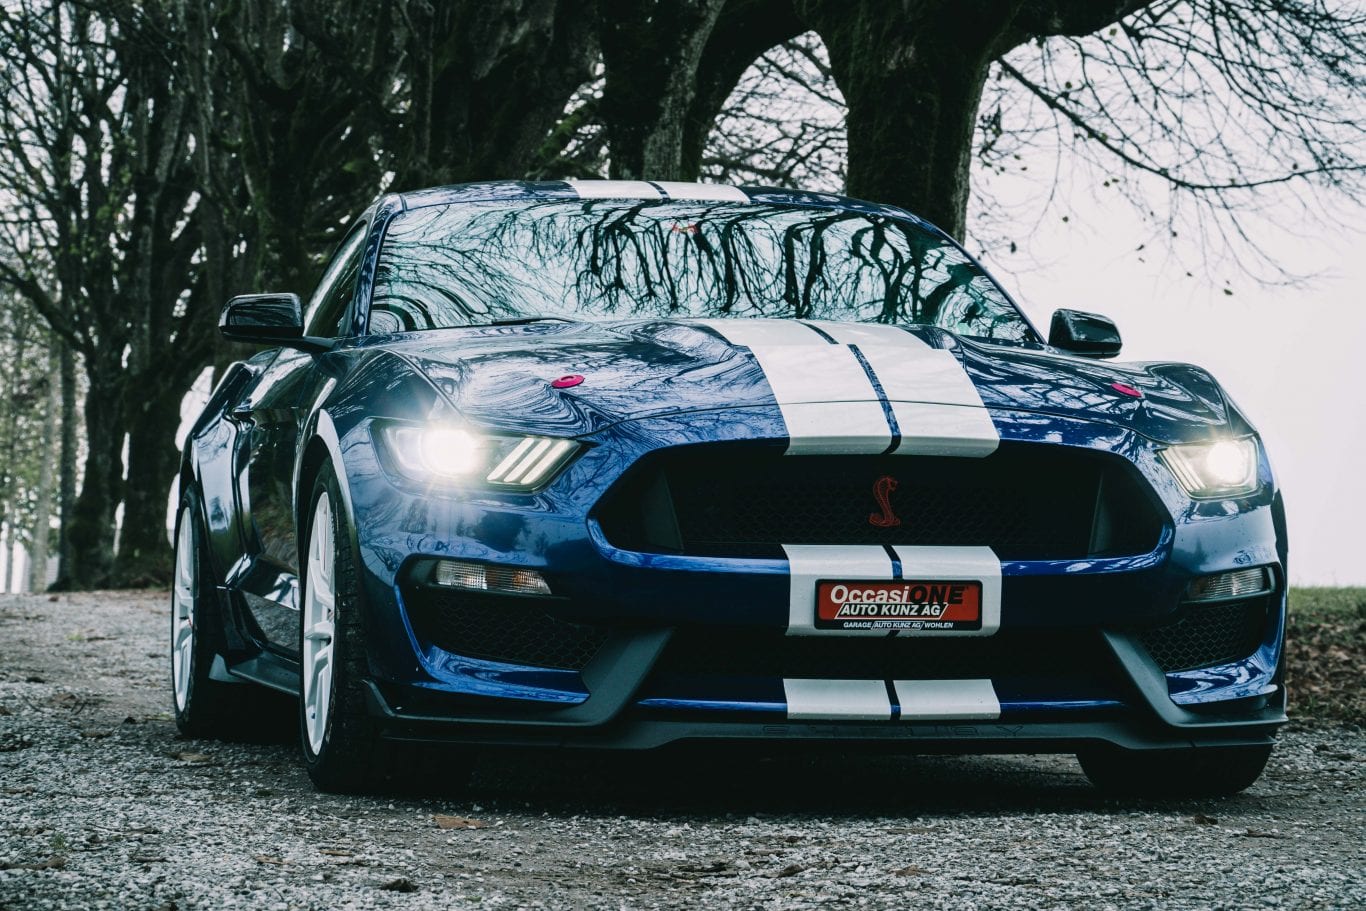 2016 Shelby Mustang im Test: Wie schnell ist das Pony Car wirklich? - Auto Kunz AG 3